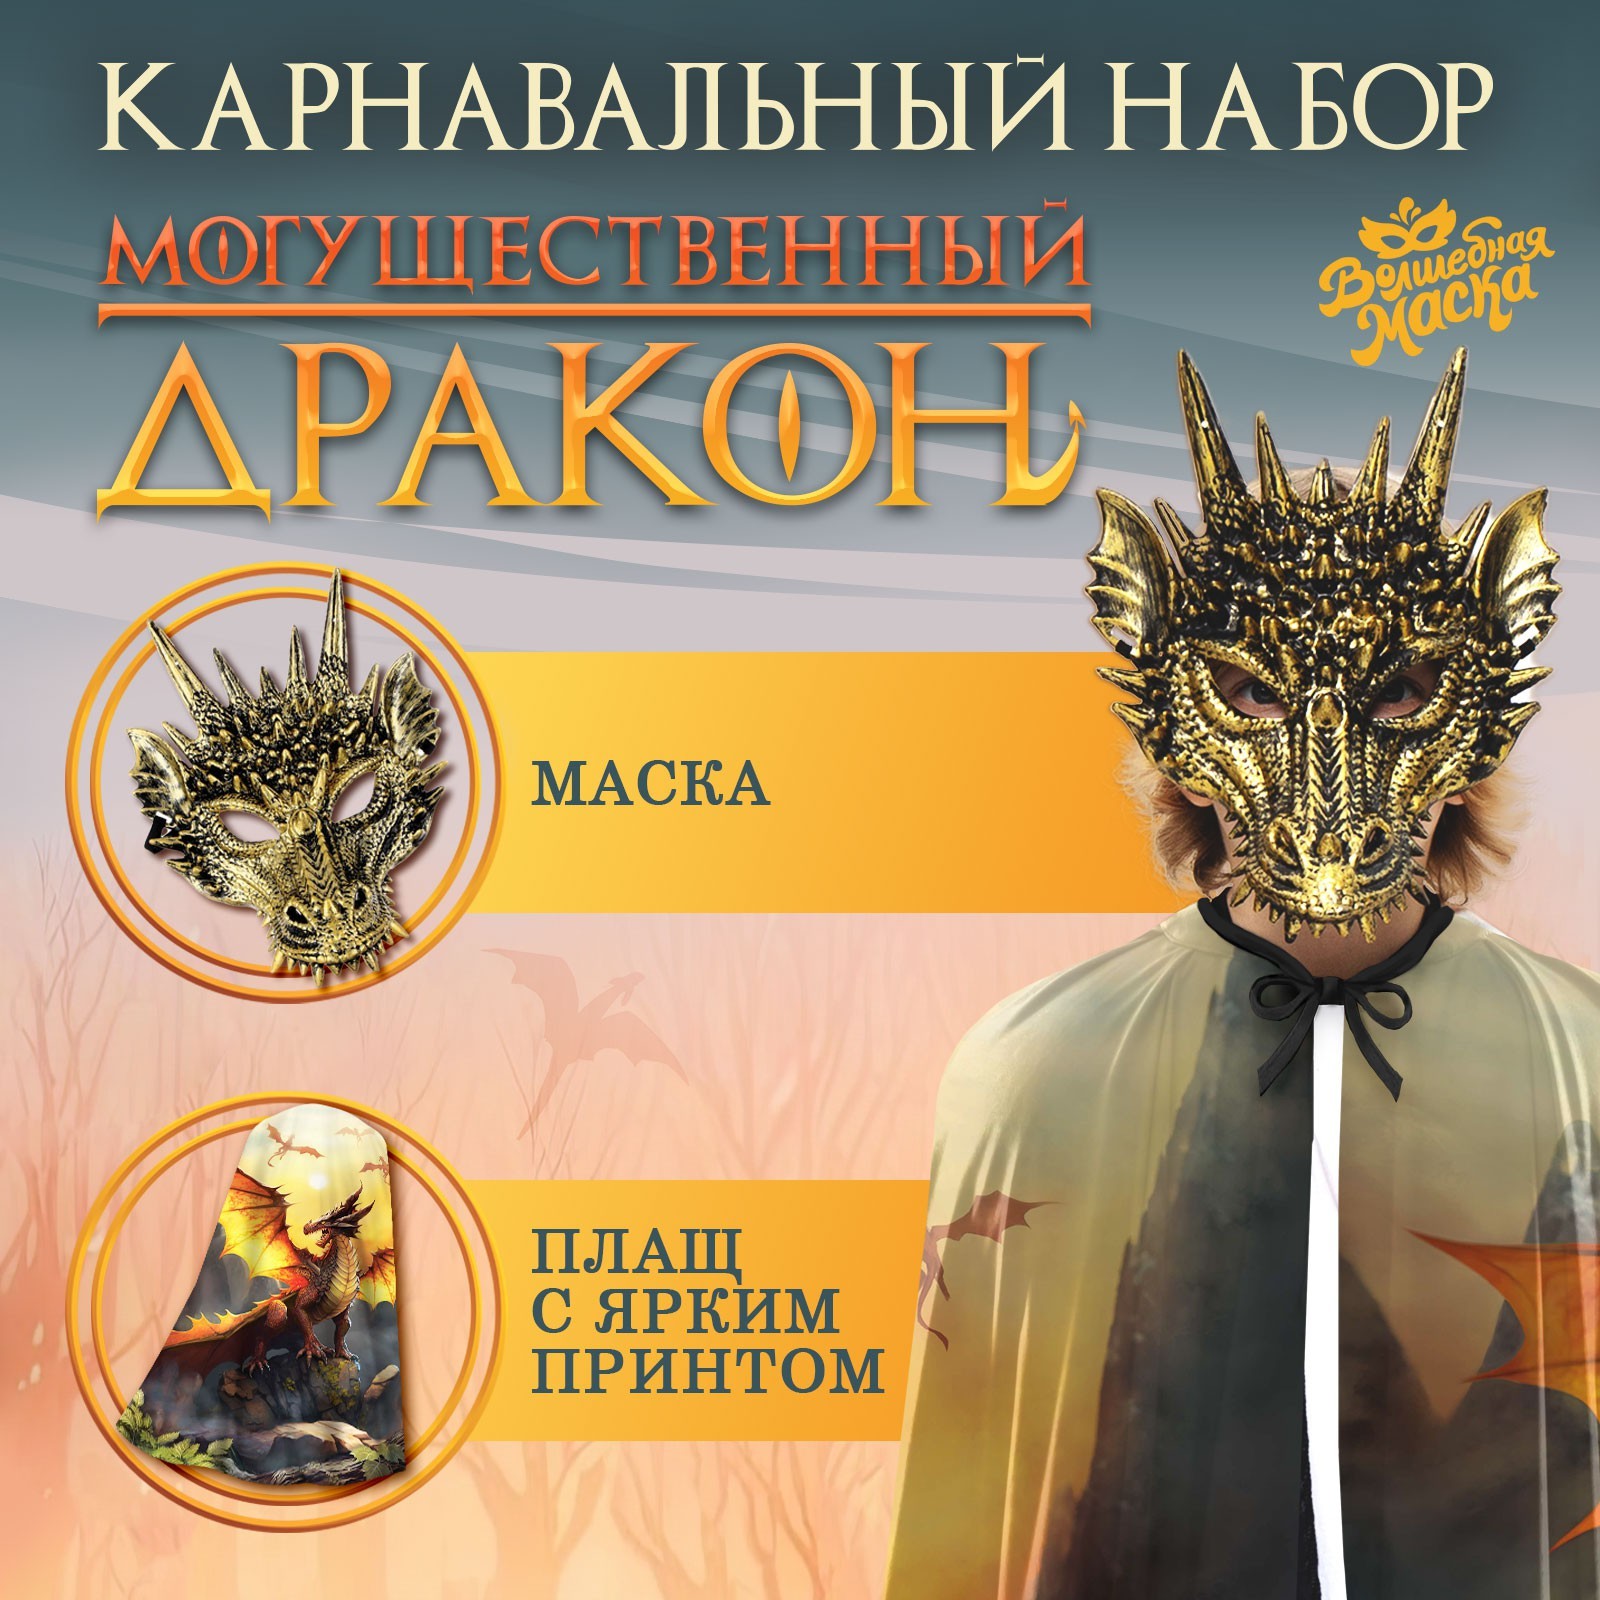 Карнавальный набор Могущественный дракон плащ и маска   9668068